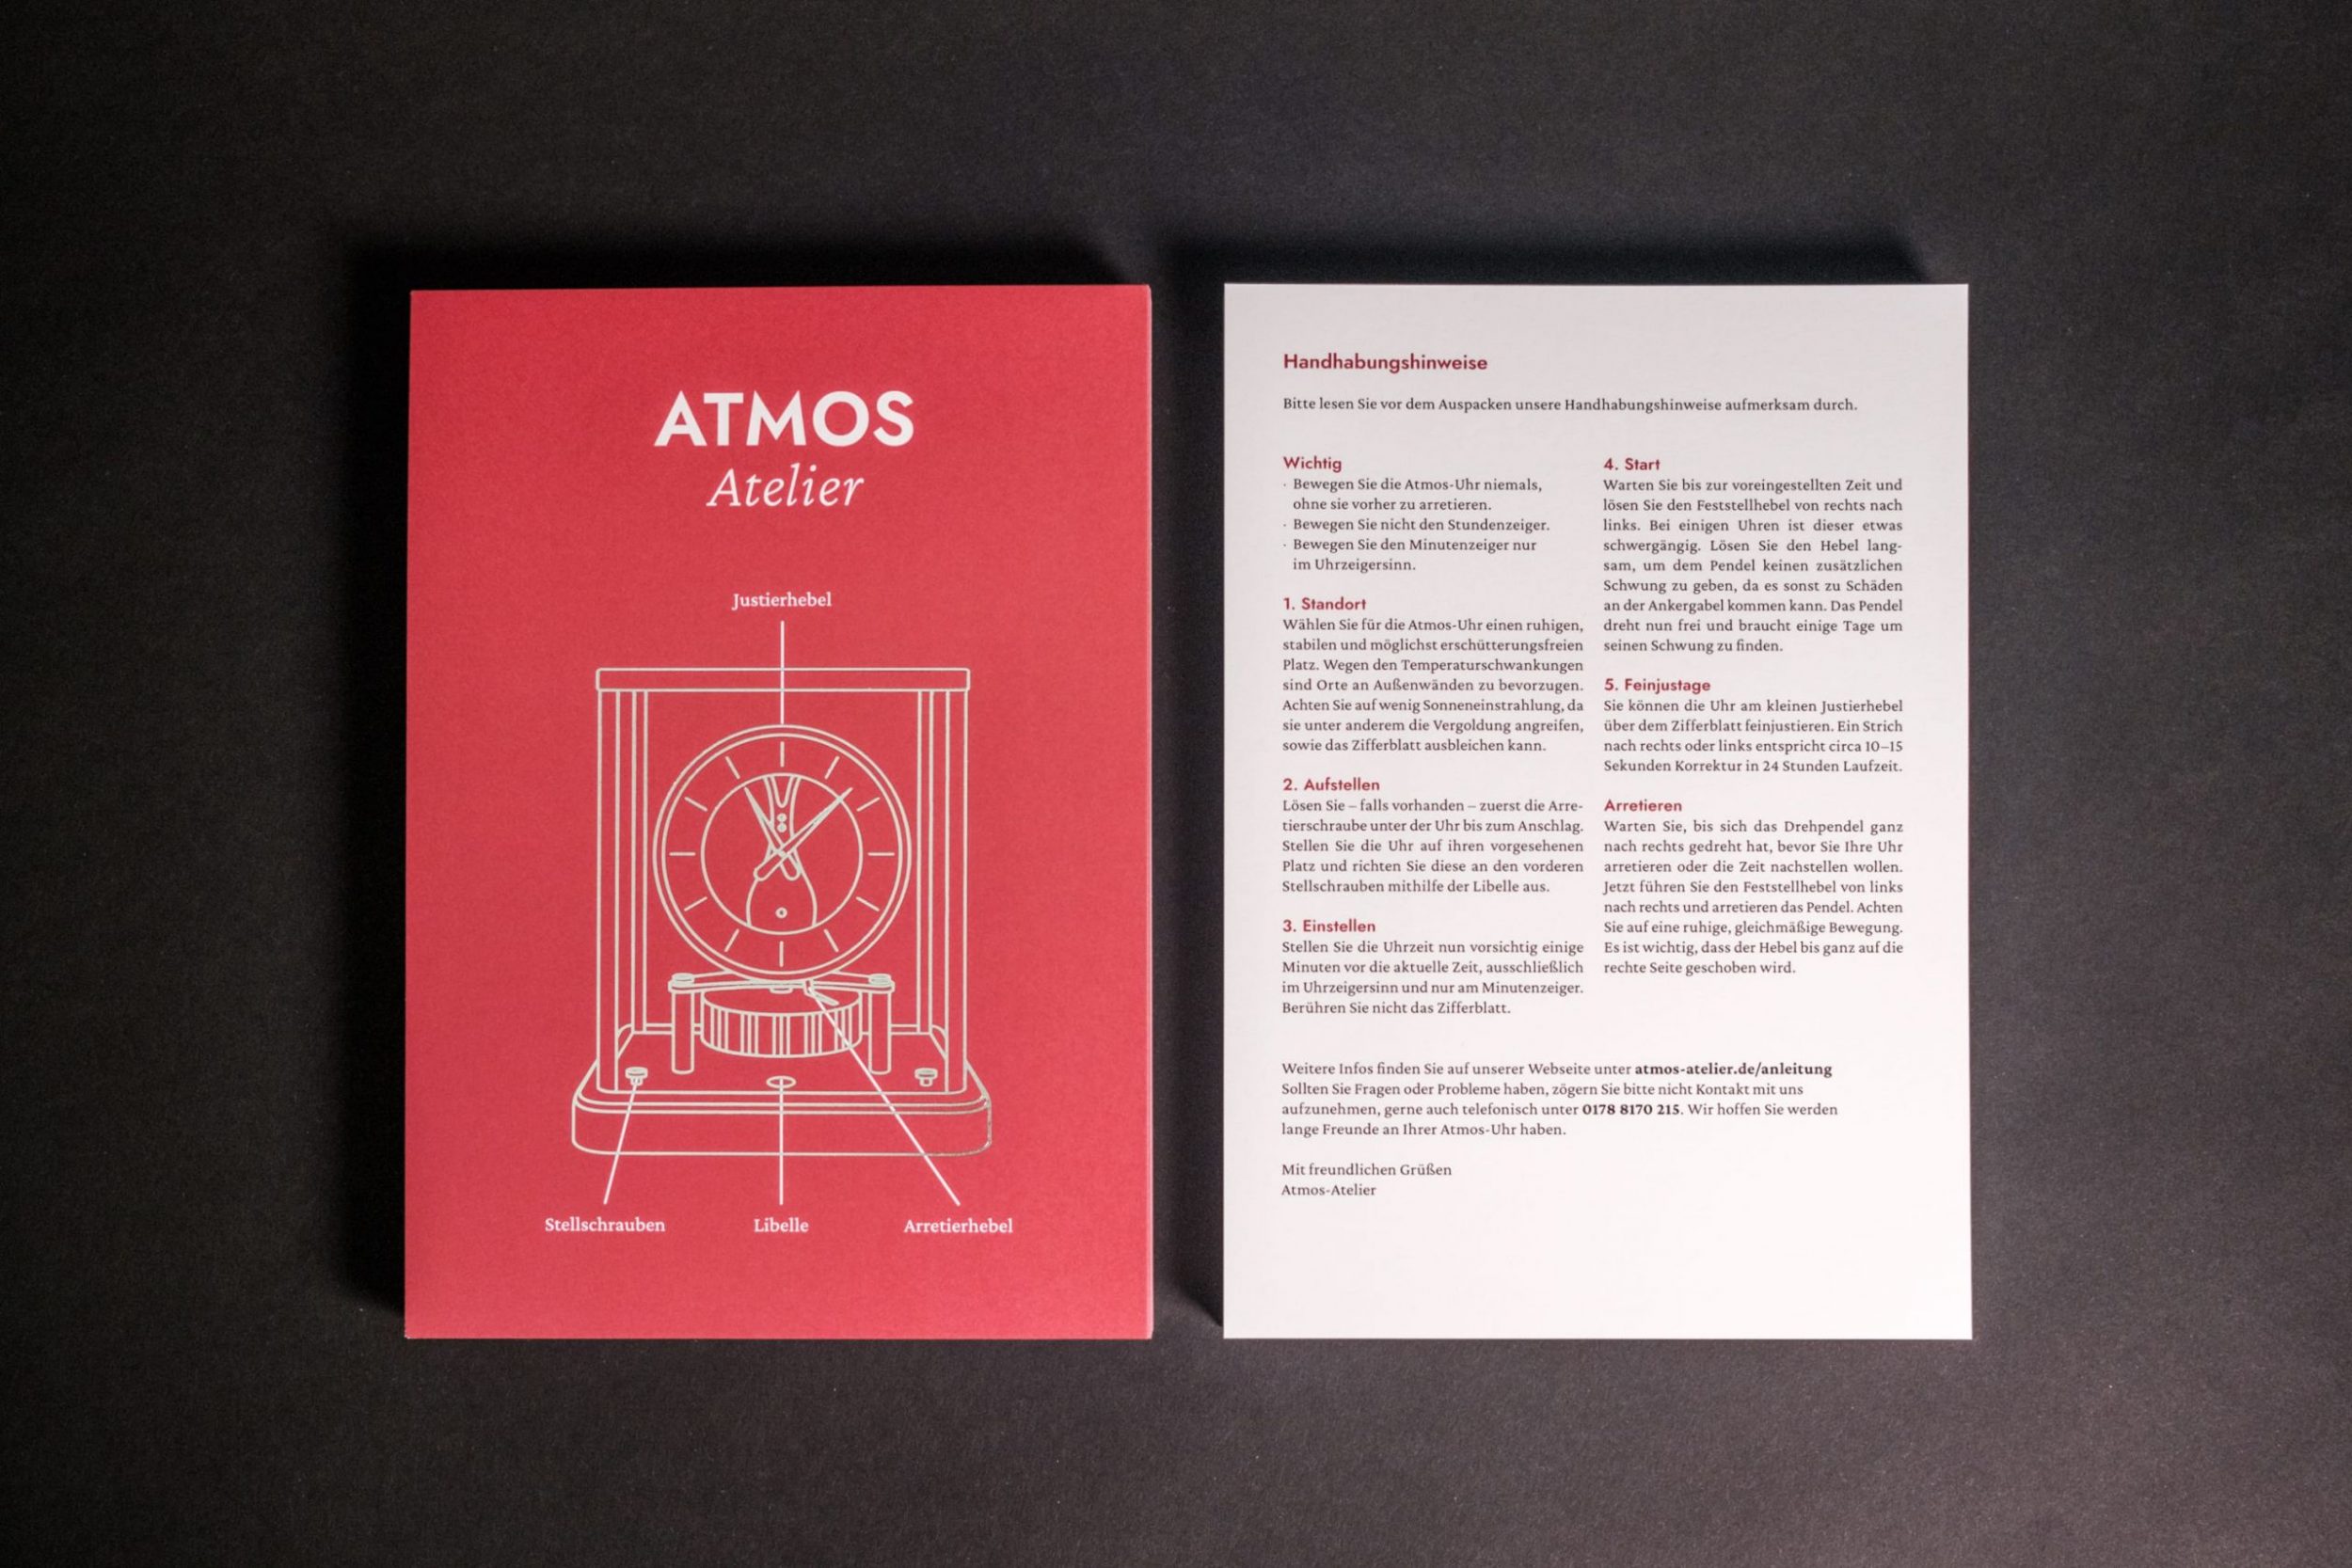 Atmos-Atelier_Handhabungshinweise_05